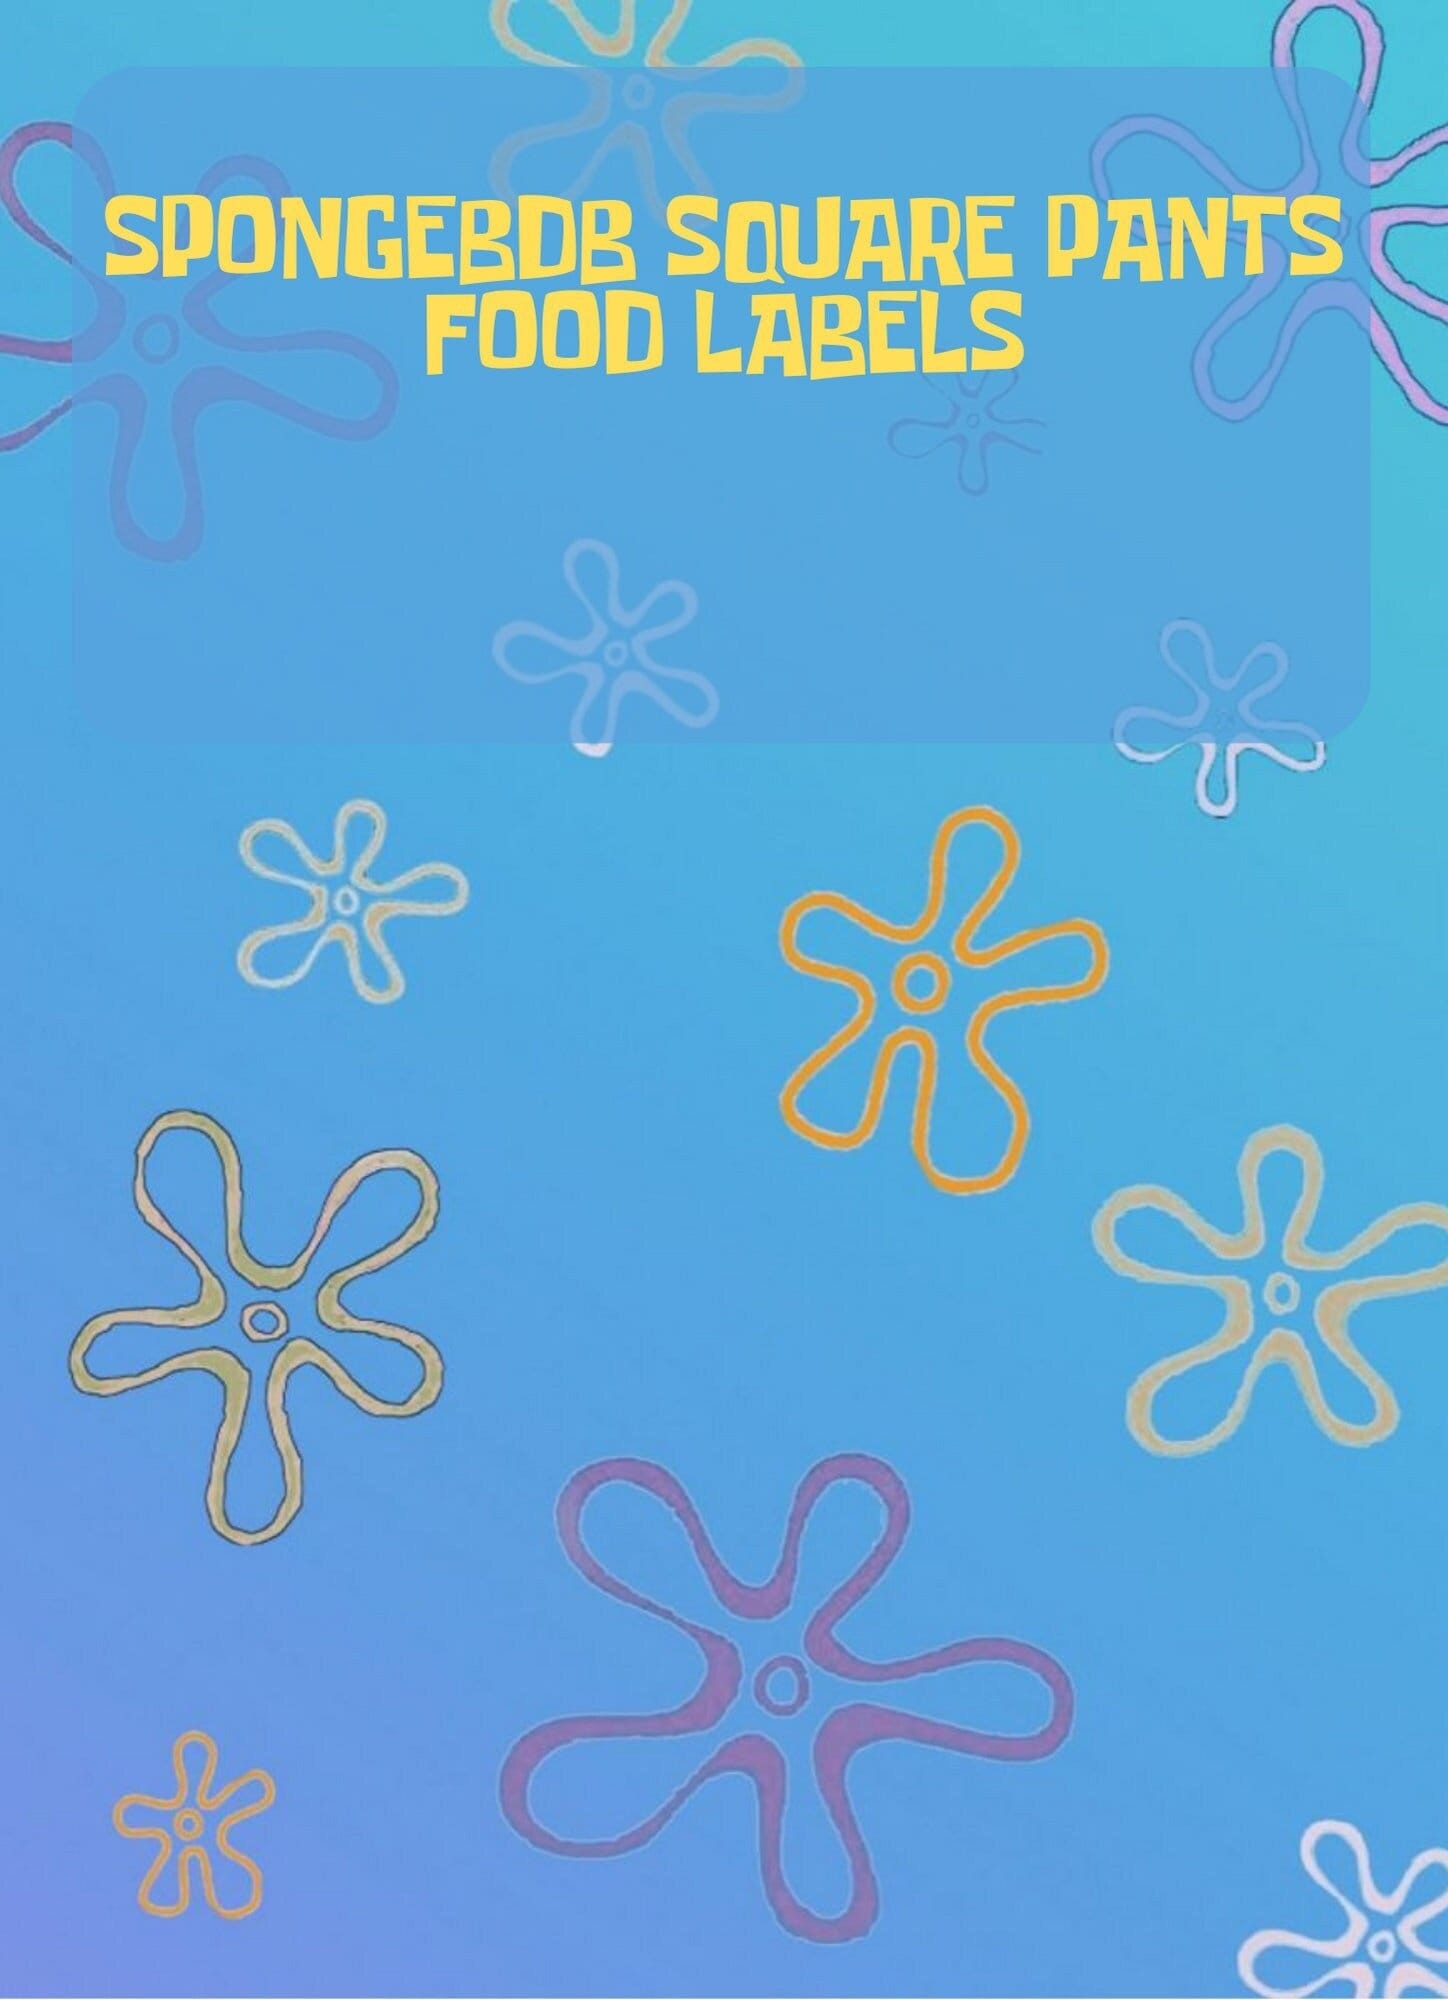 SPONGEBOB FOOD LABELS 12 Labels Etsy